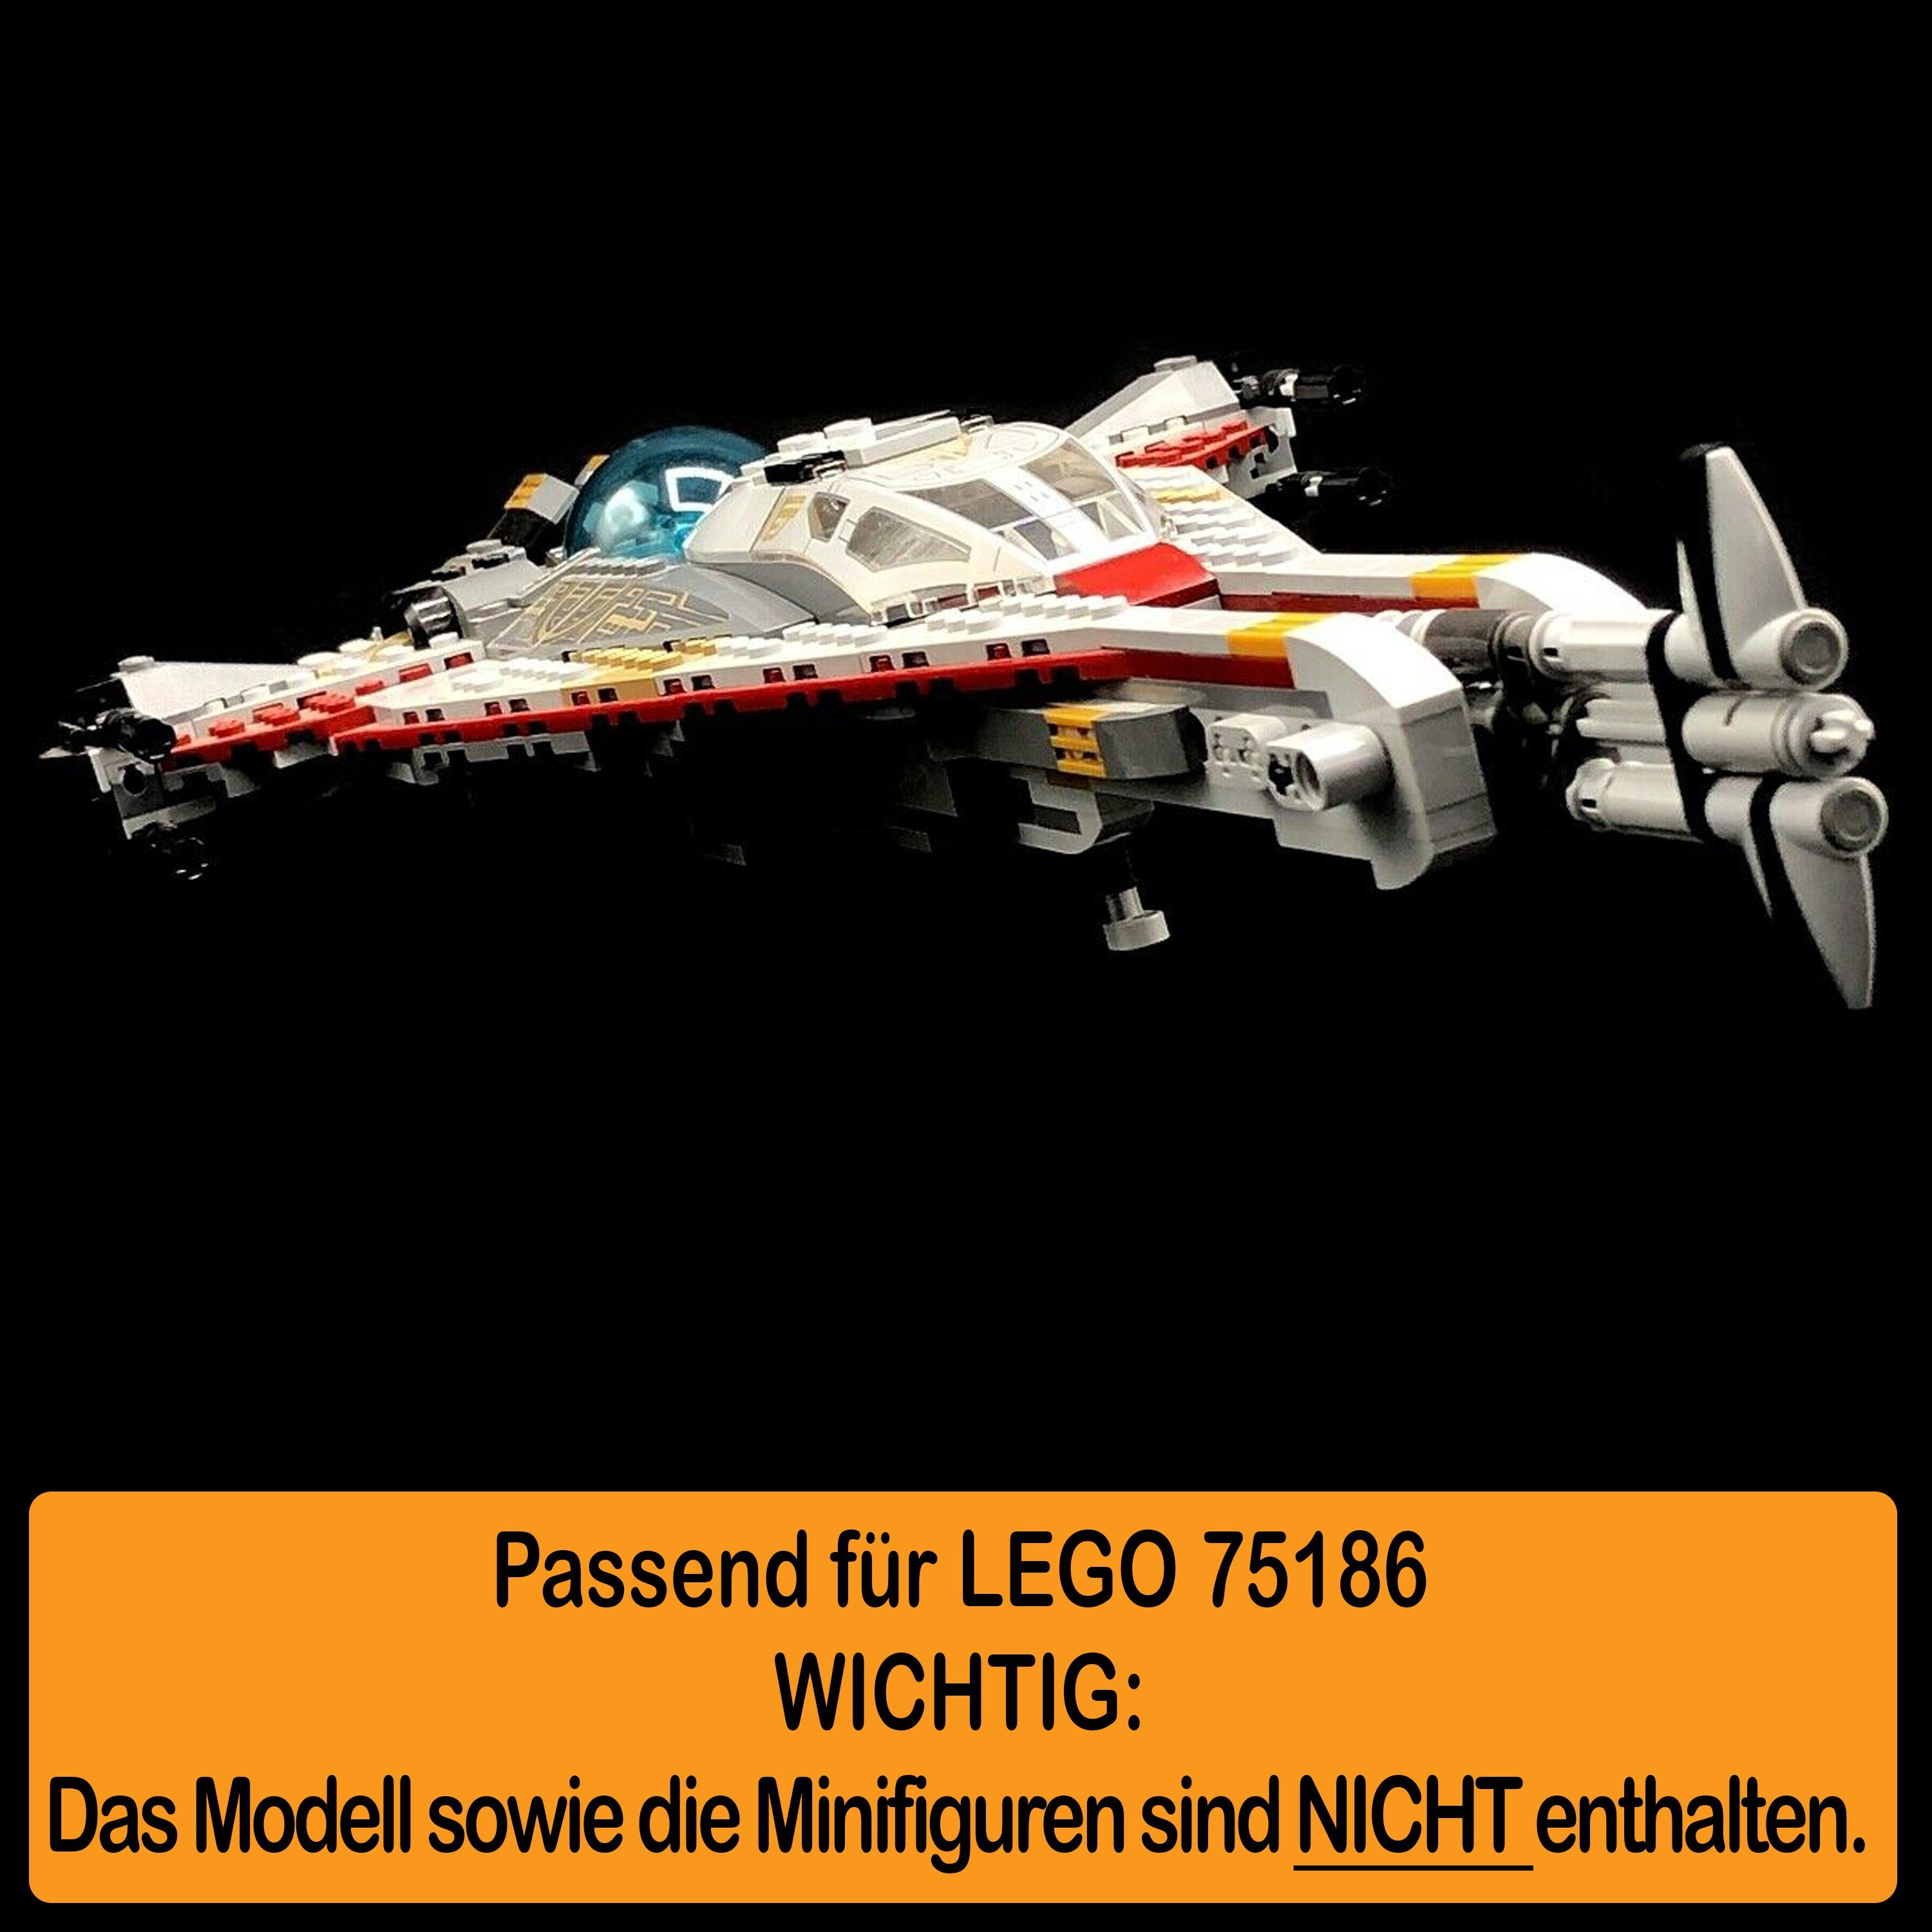 LEGO Standfuß für Made Germany Stand 100% und einstellbar, AREA17 (verschiedene selbst Winkel in 75186 Display zum Acryl zusammenbauen), The Arrowhead Positionen